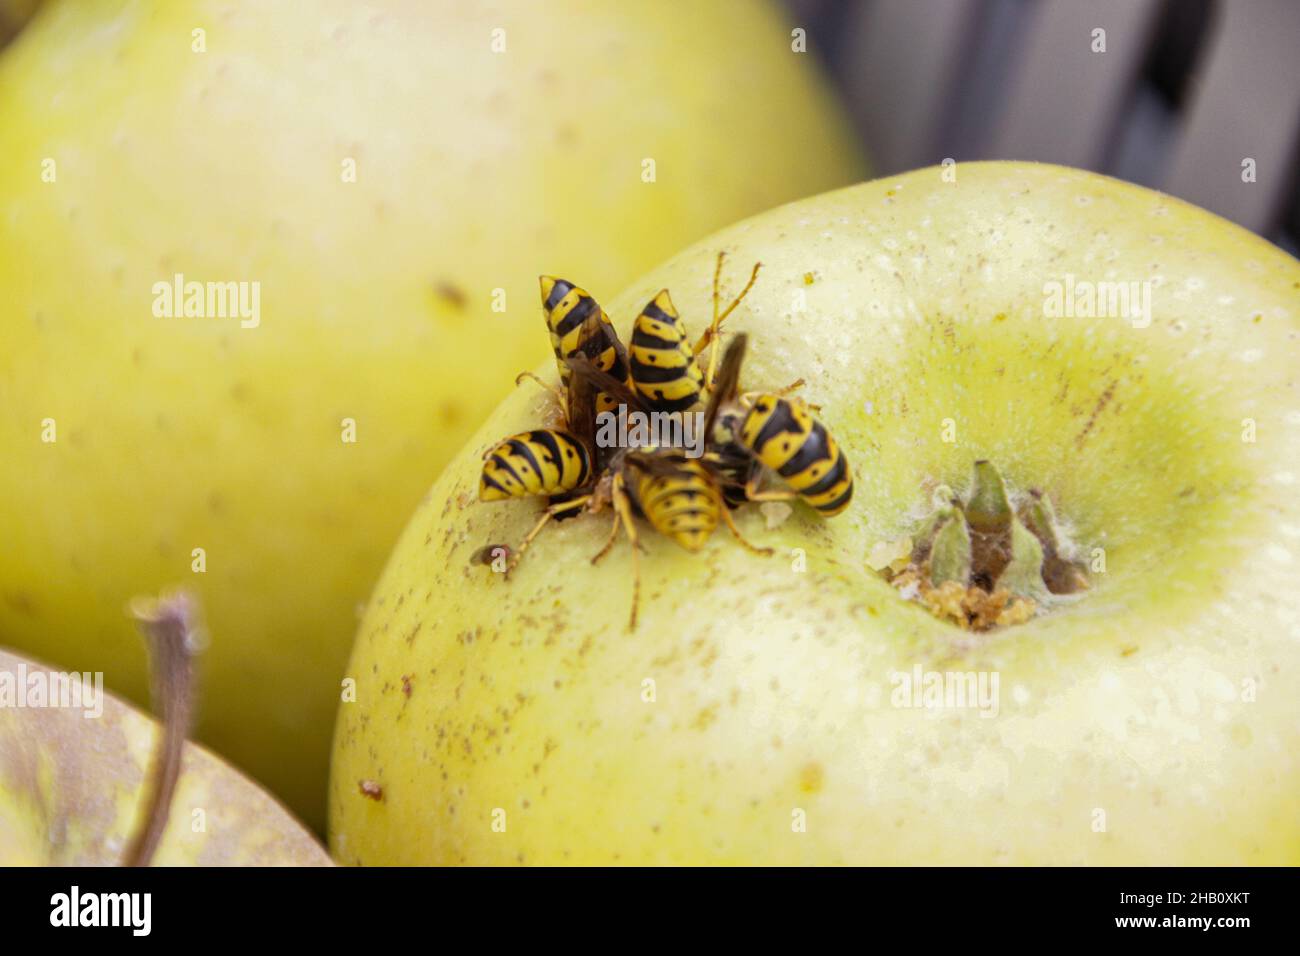 Macro détail des abeilles se nourrissent sur une pomme.Gros plan de Wasp abdomens sur une pomme.Un essaim de blouson jaune mangeait de la pomme rouge sur l'herbe Banque D'Images